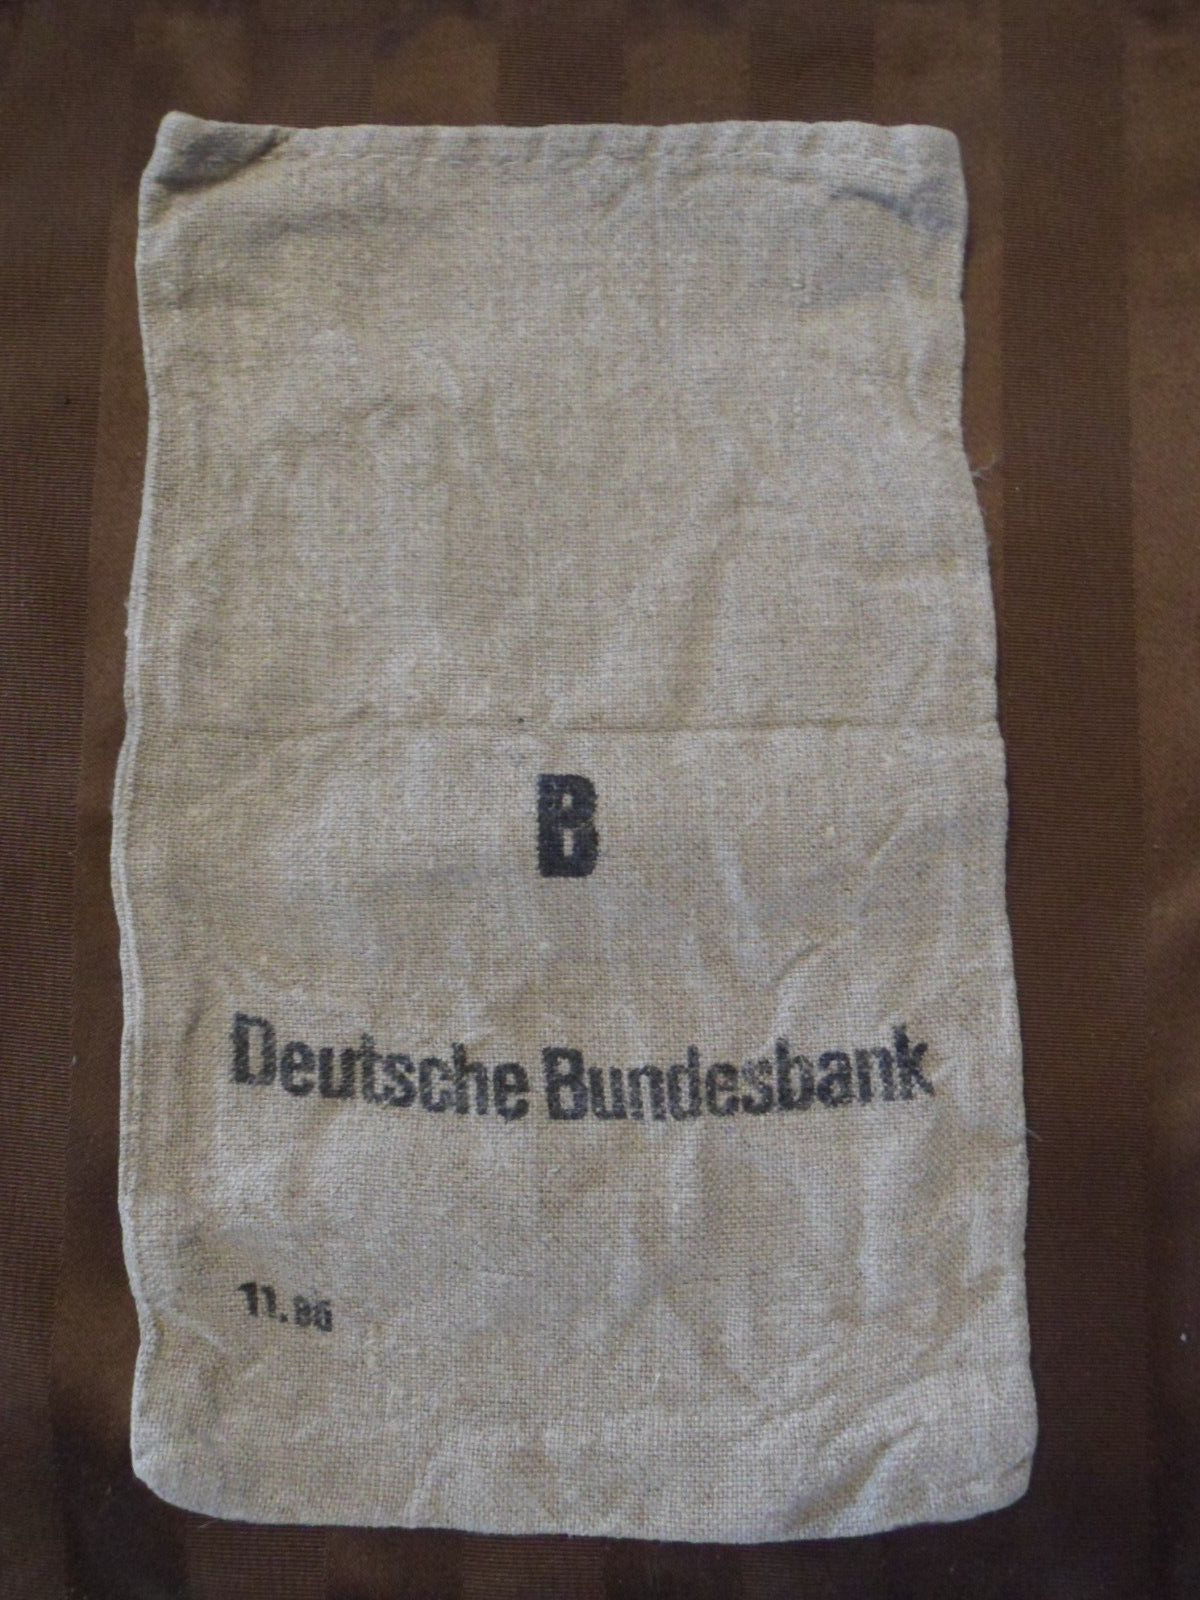 German Bank Money Bag Deutsche Bundesbank-Cloth/Linen Old Style